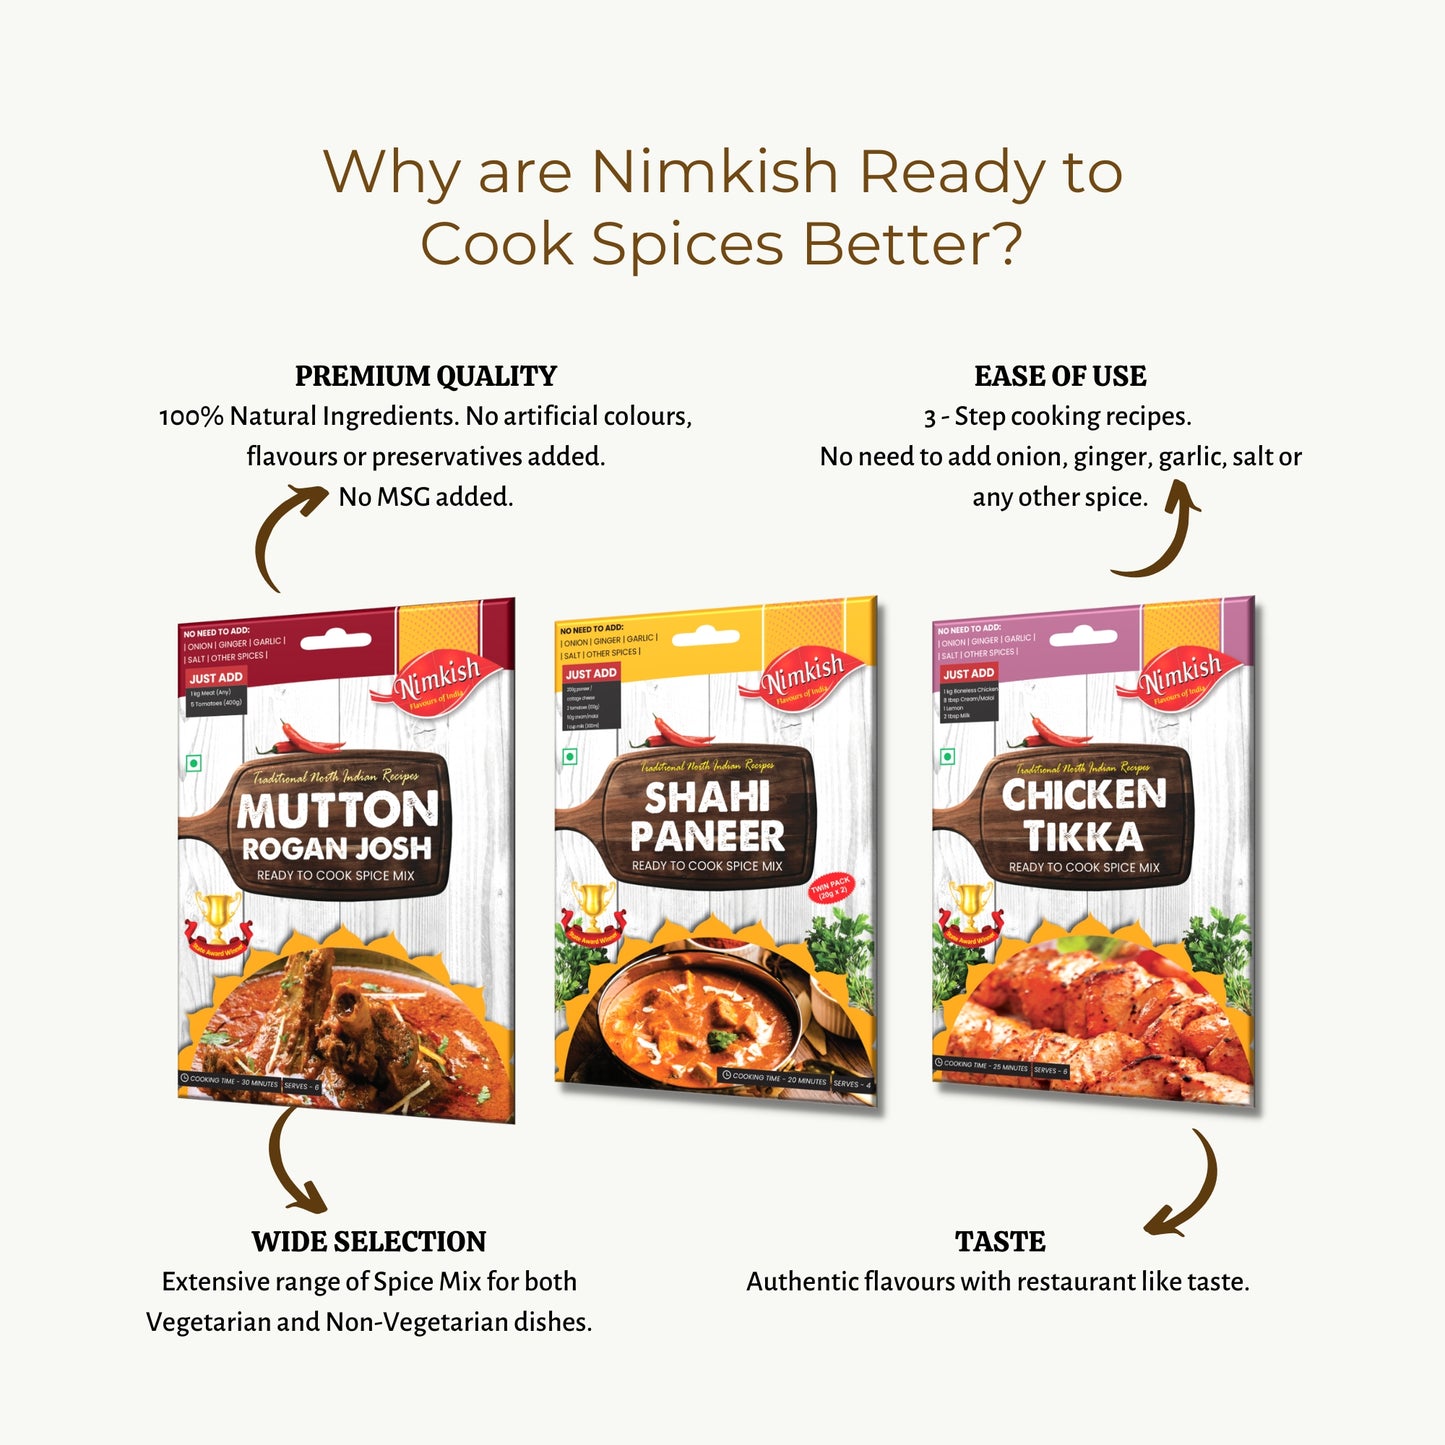 Nimkish Gravy Masala Spice Mix 60g